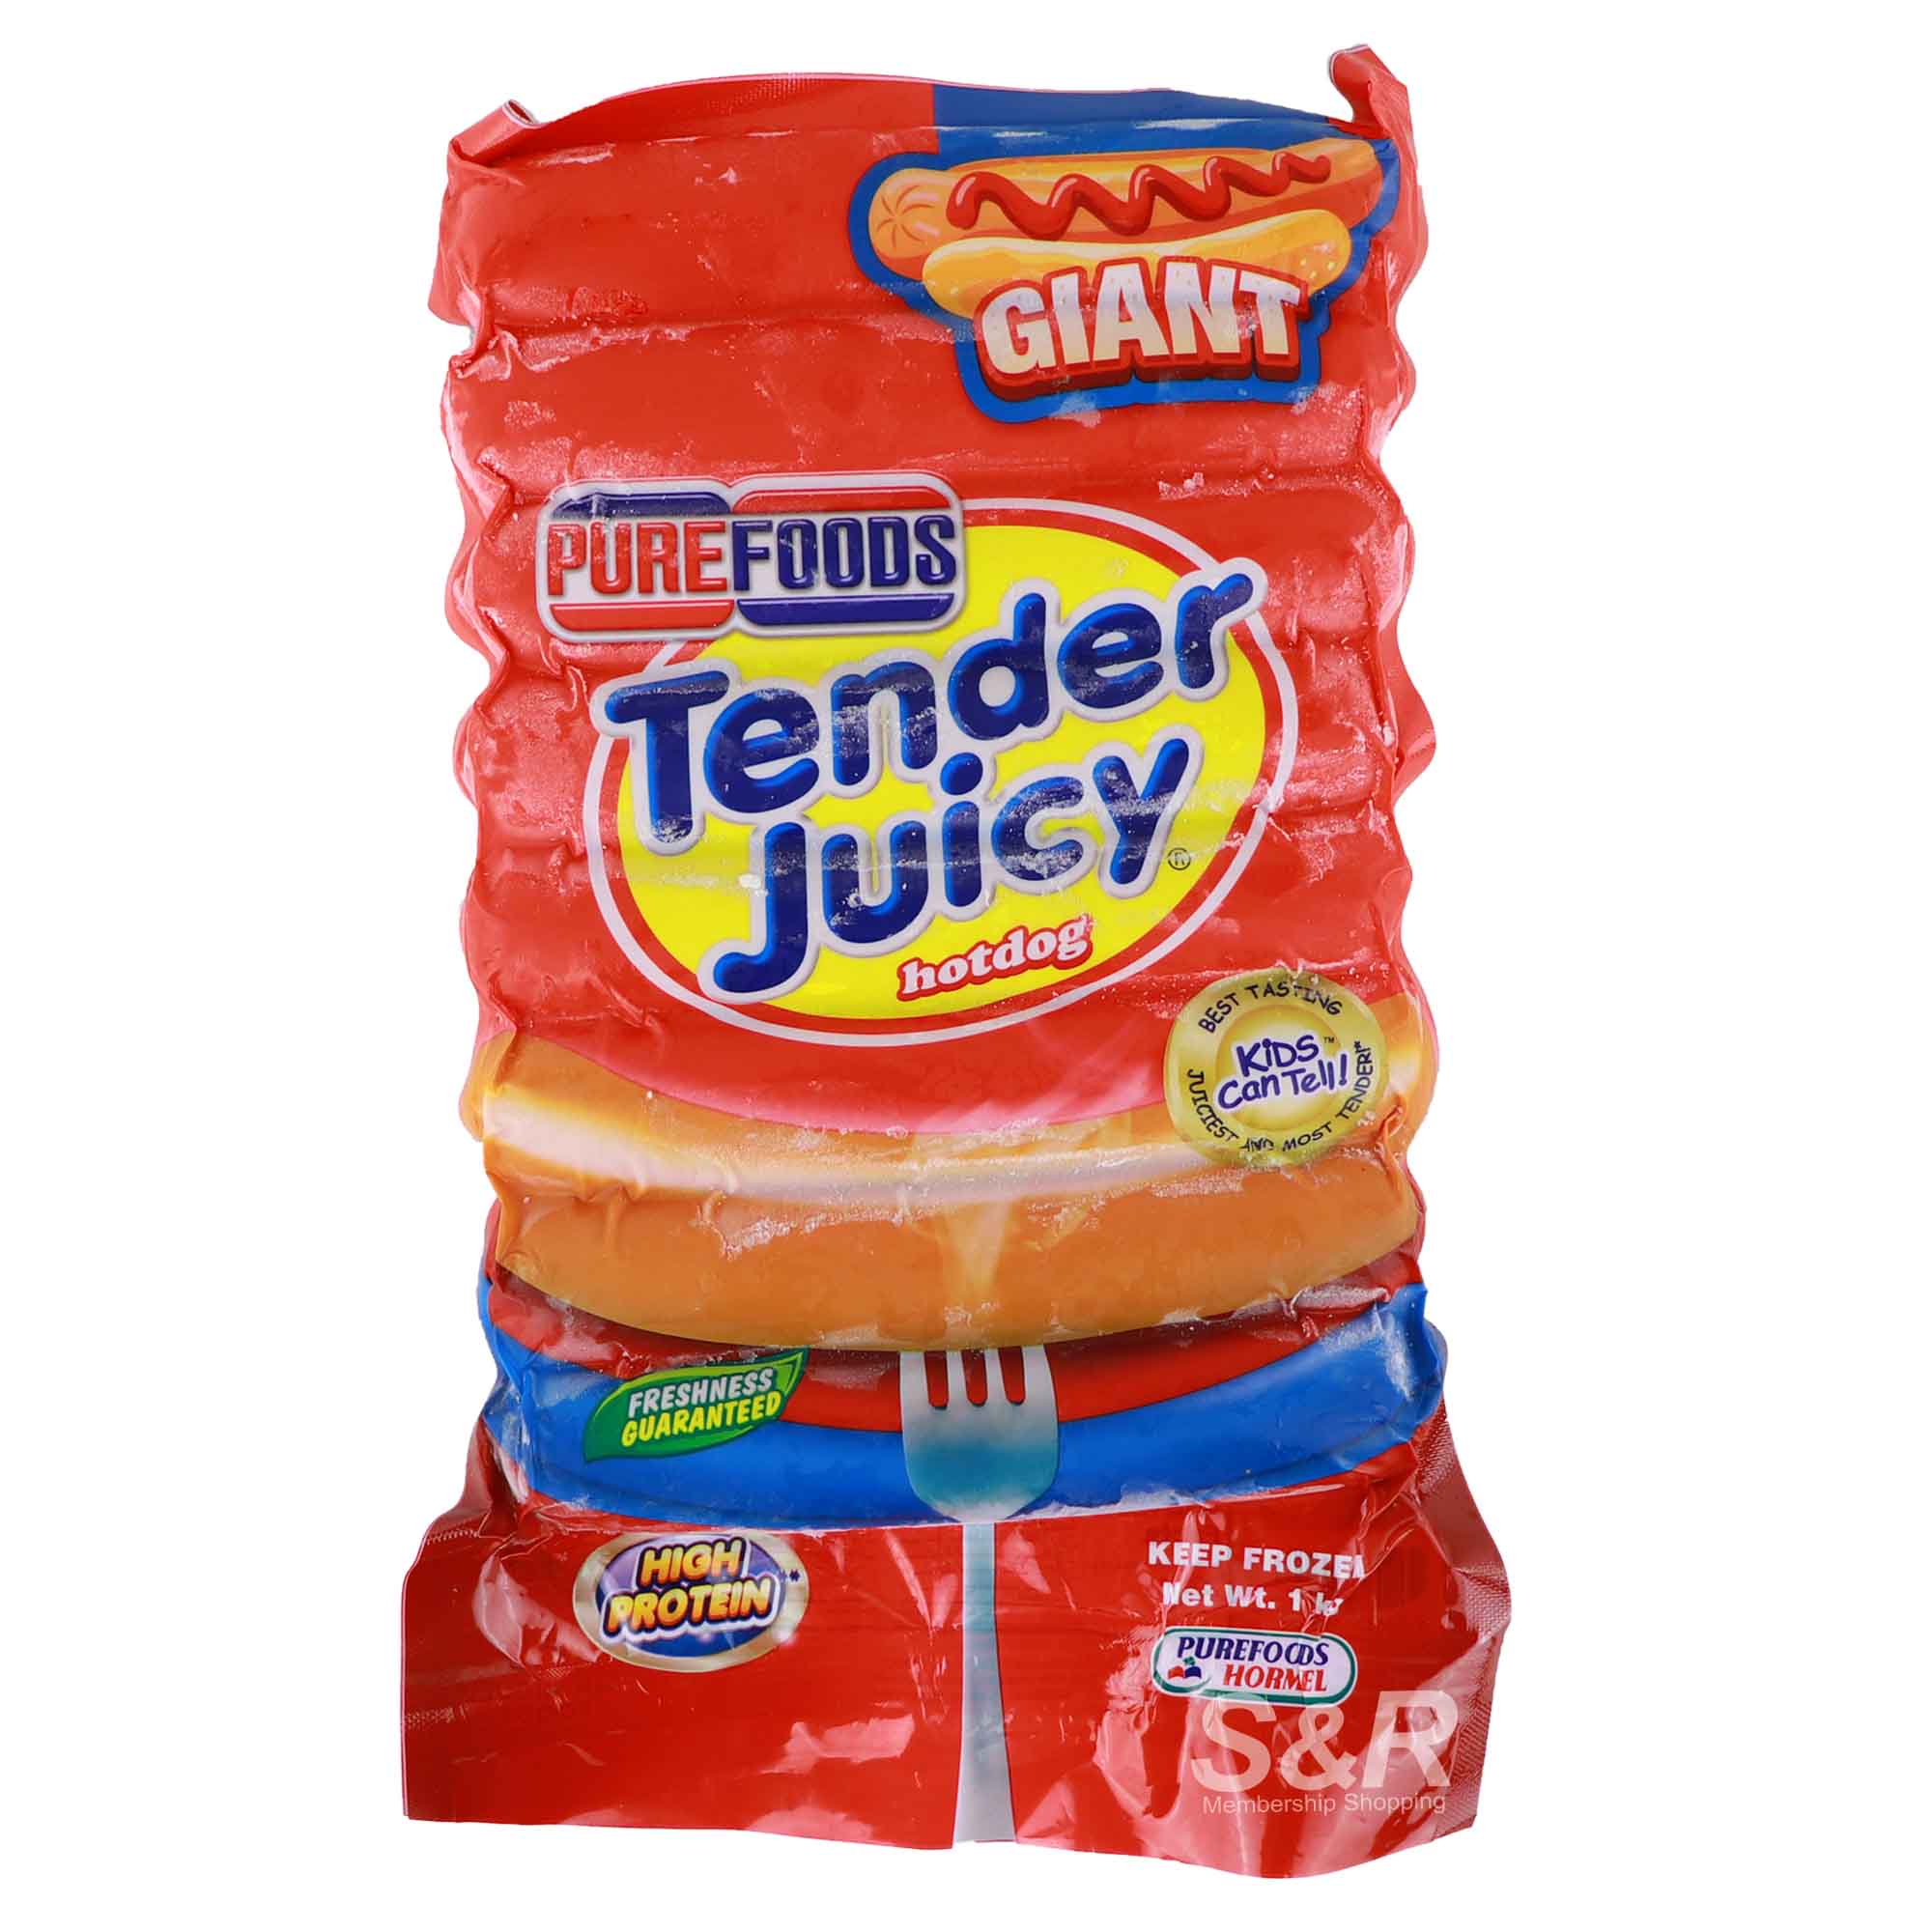 Purefoods Tender Juicy Giant Hotdog 1kg